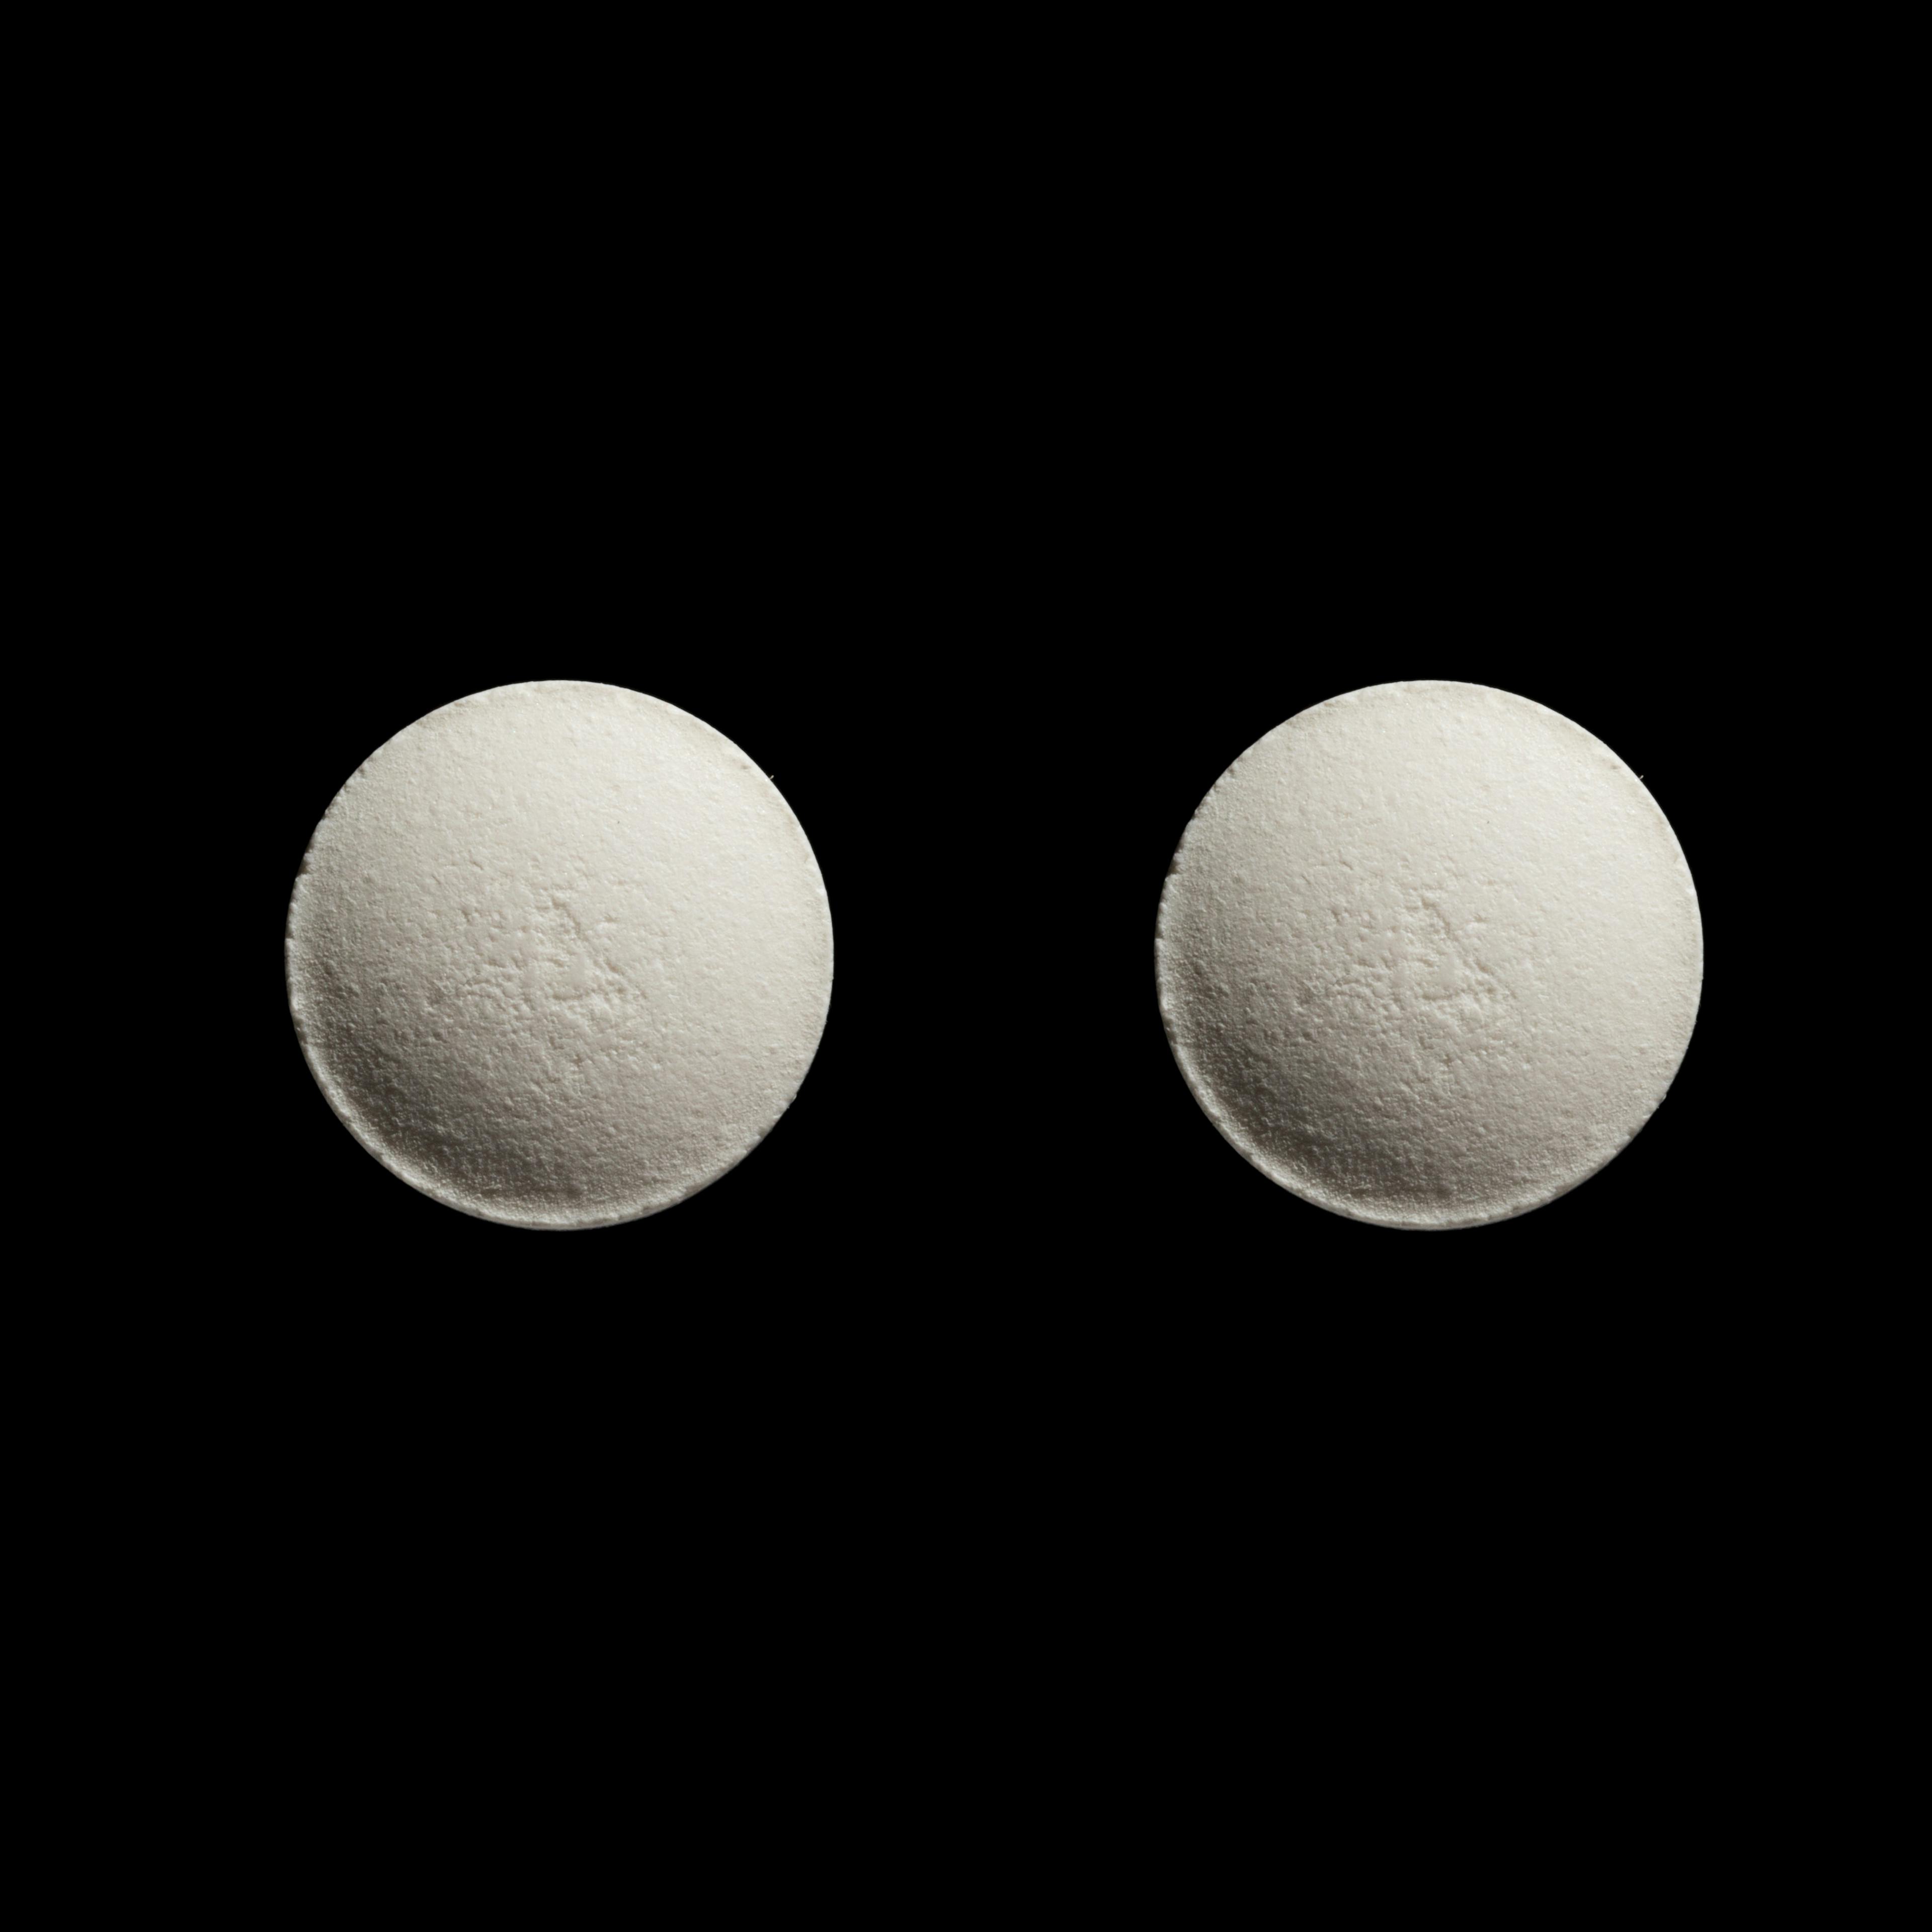 Ibandronic Acid Alvogen 150 mg tafla